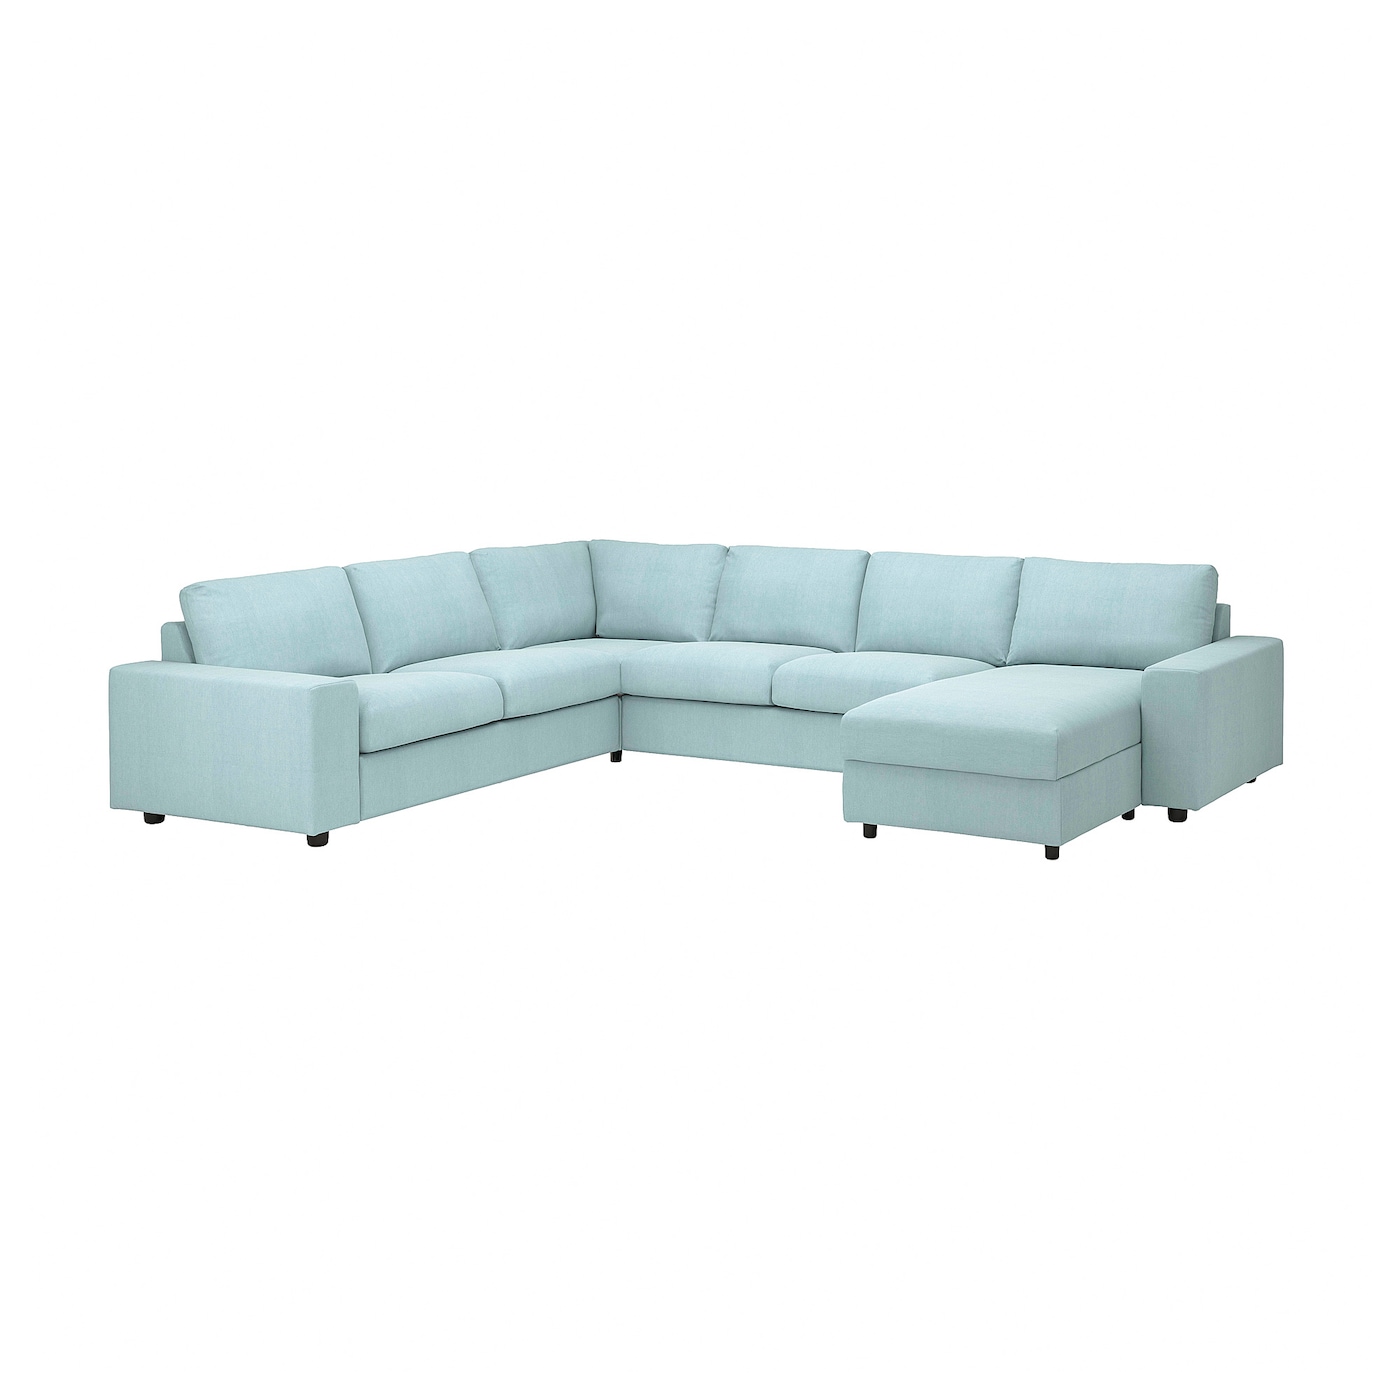 ВИМЛЕ Диван угловой, 5-местный. диван+диван, с широкими подлокотниками/Саксемара светло-синий VIMLE IKEA